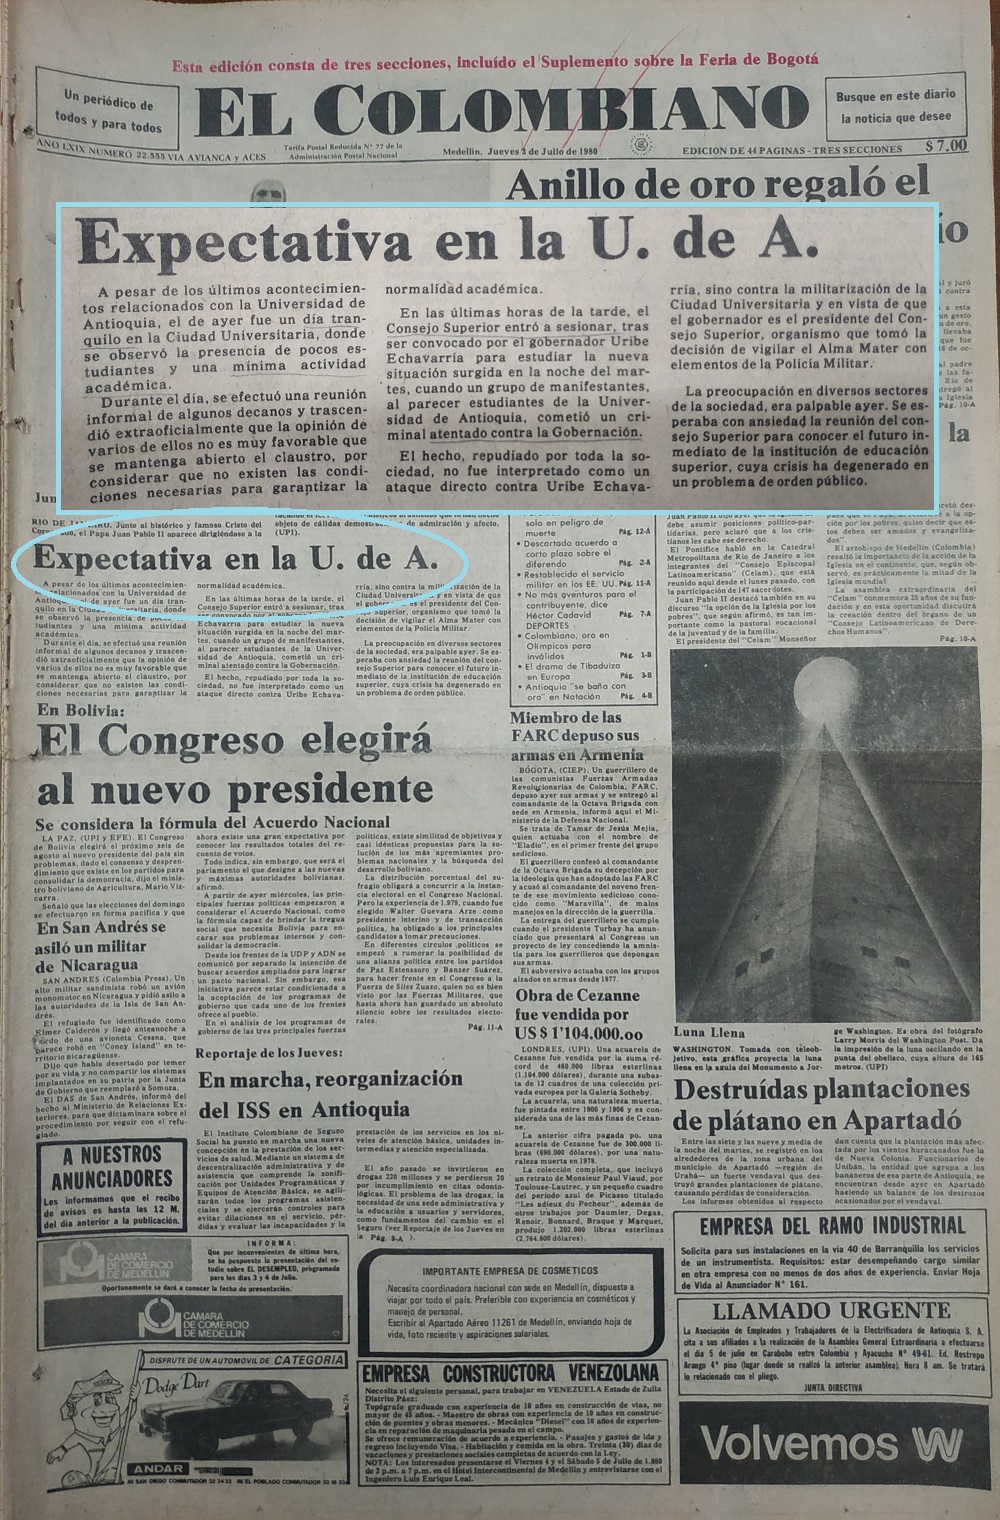 Fotografía tomada de la edición del 3 de julio de 1980 del periódico El Colombiano.